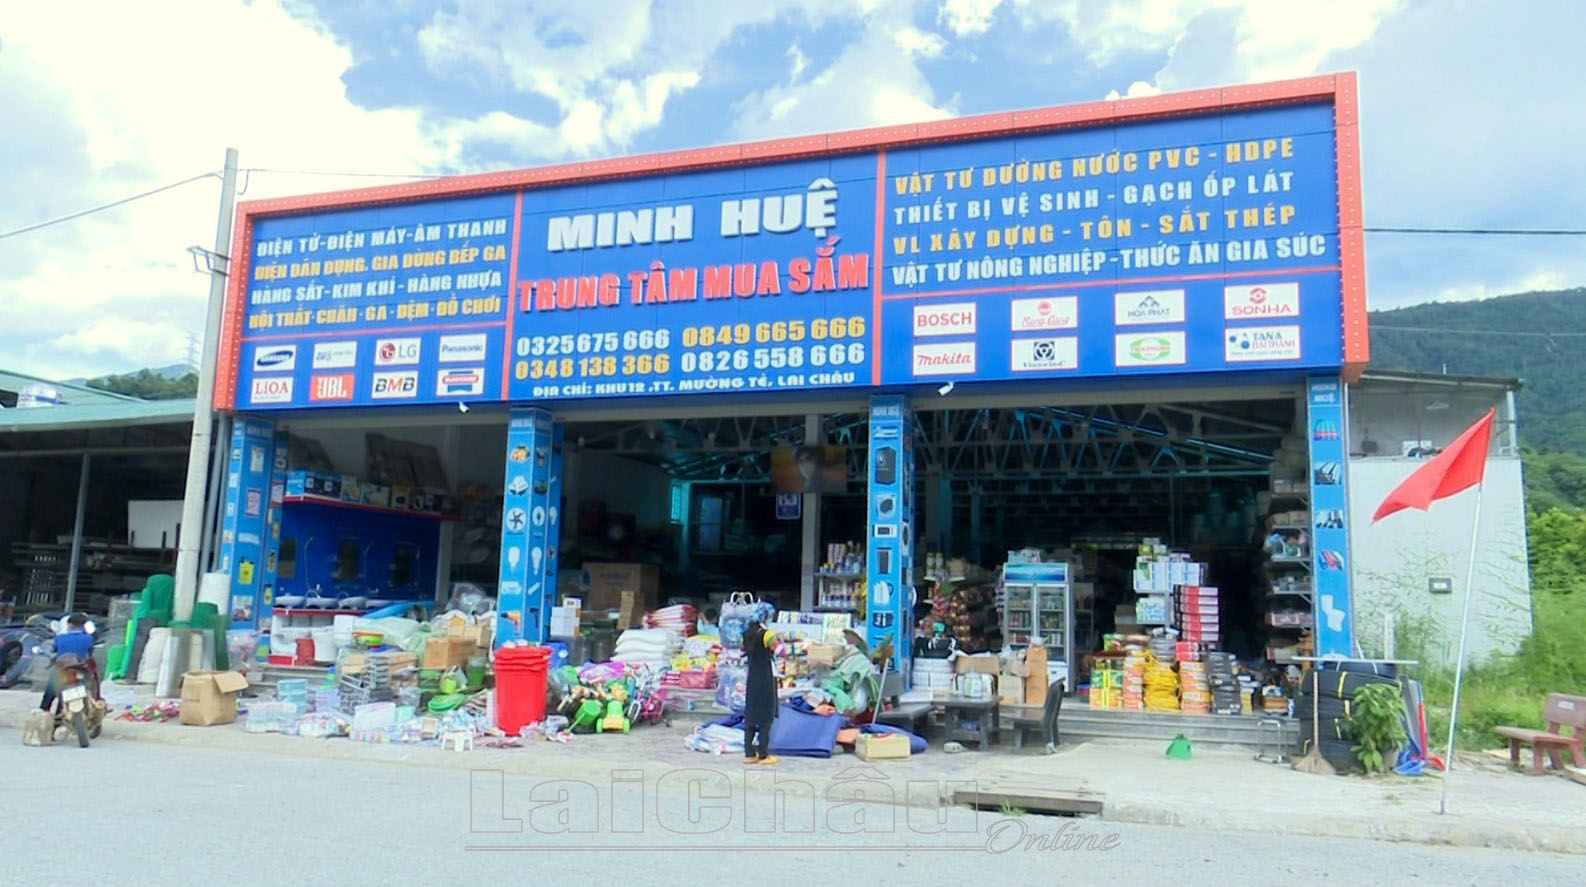 Kinh doanh đa dạng các mặt hàng, ở vị trí đắc địa, Trung tâm mua sắm Minh Huệ của gia đình bà Đặng Thị Huệ được nhiều người dân trong huyện lựa chọn.